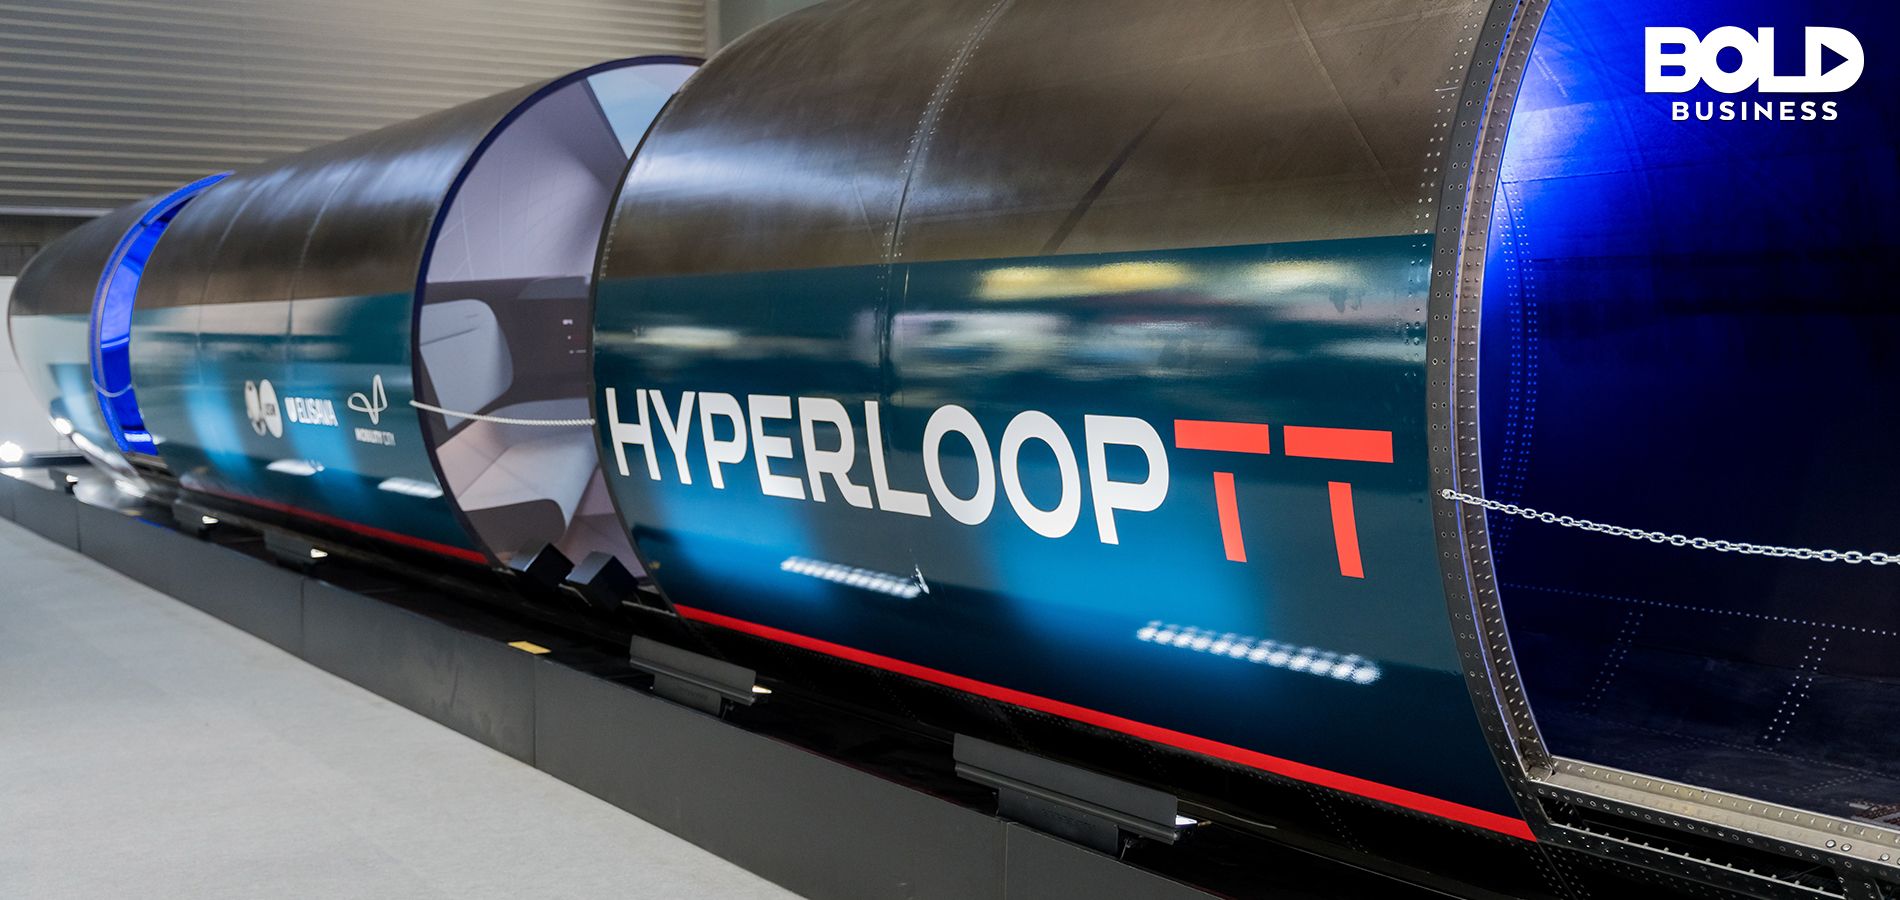 HYPERLOOP TT VS BULLET TRAIN